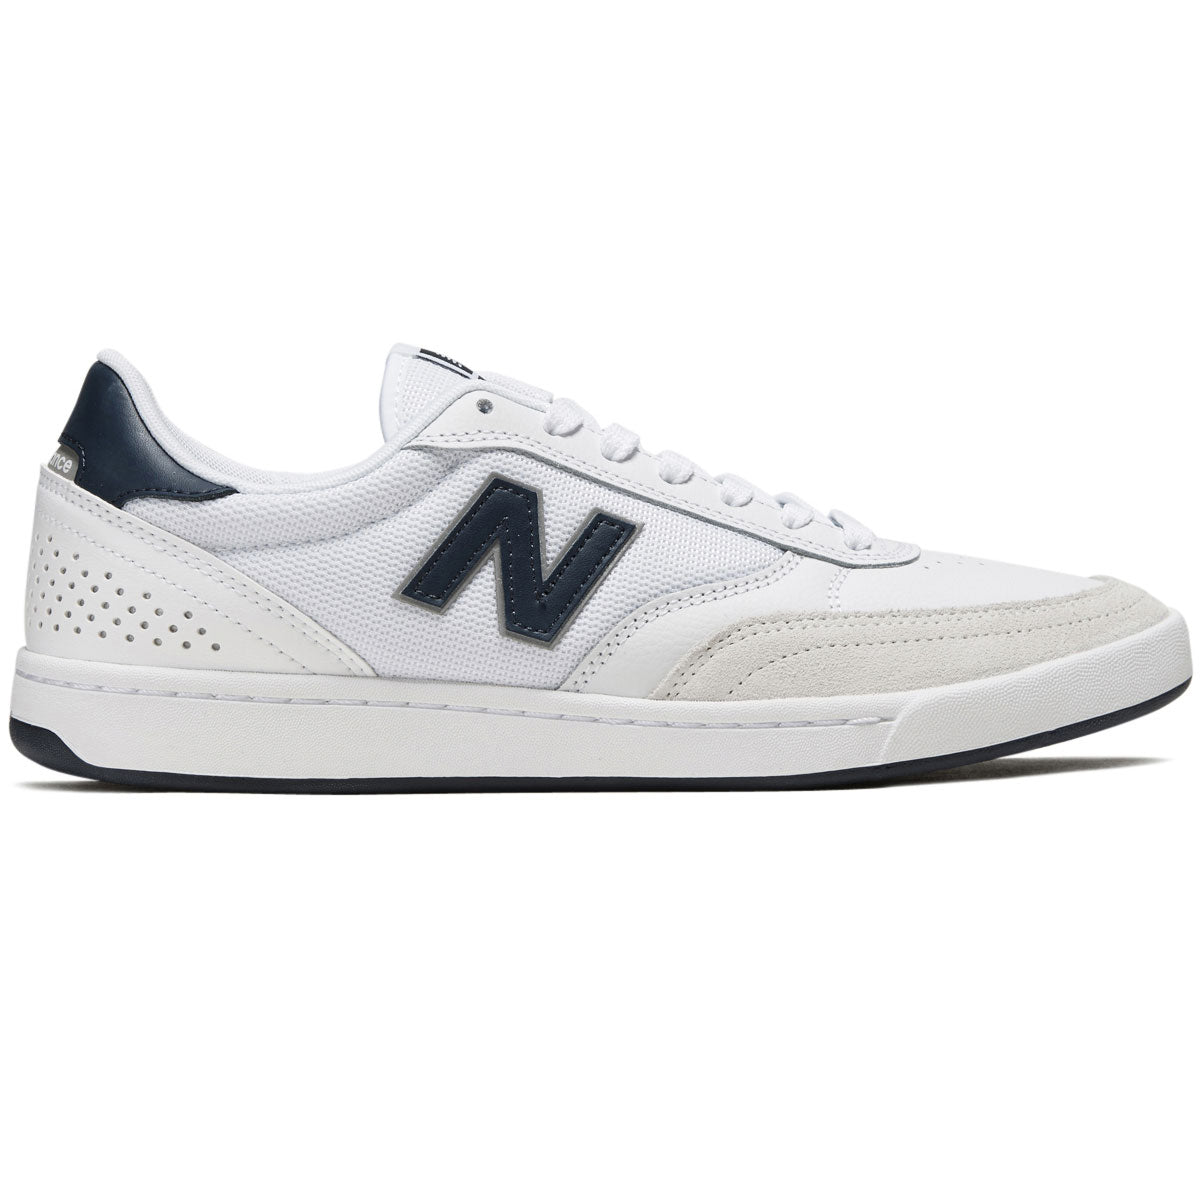 New Balance 440 Shoes - White/Navy/White image 1